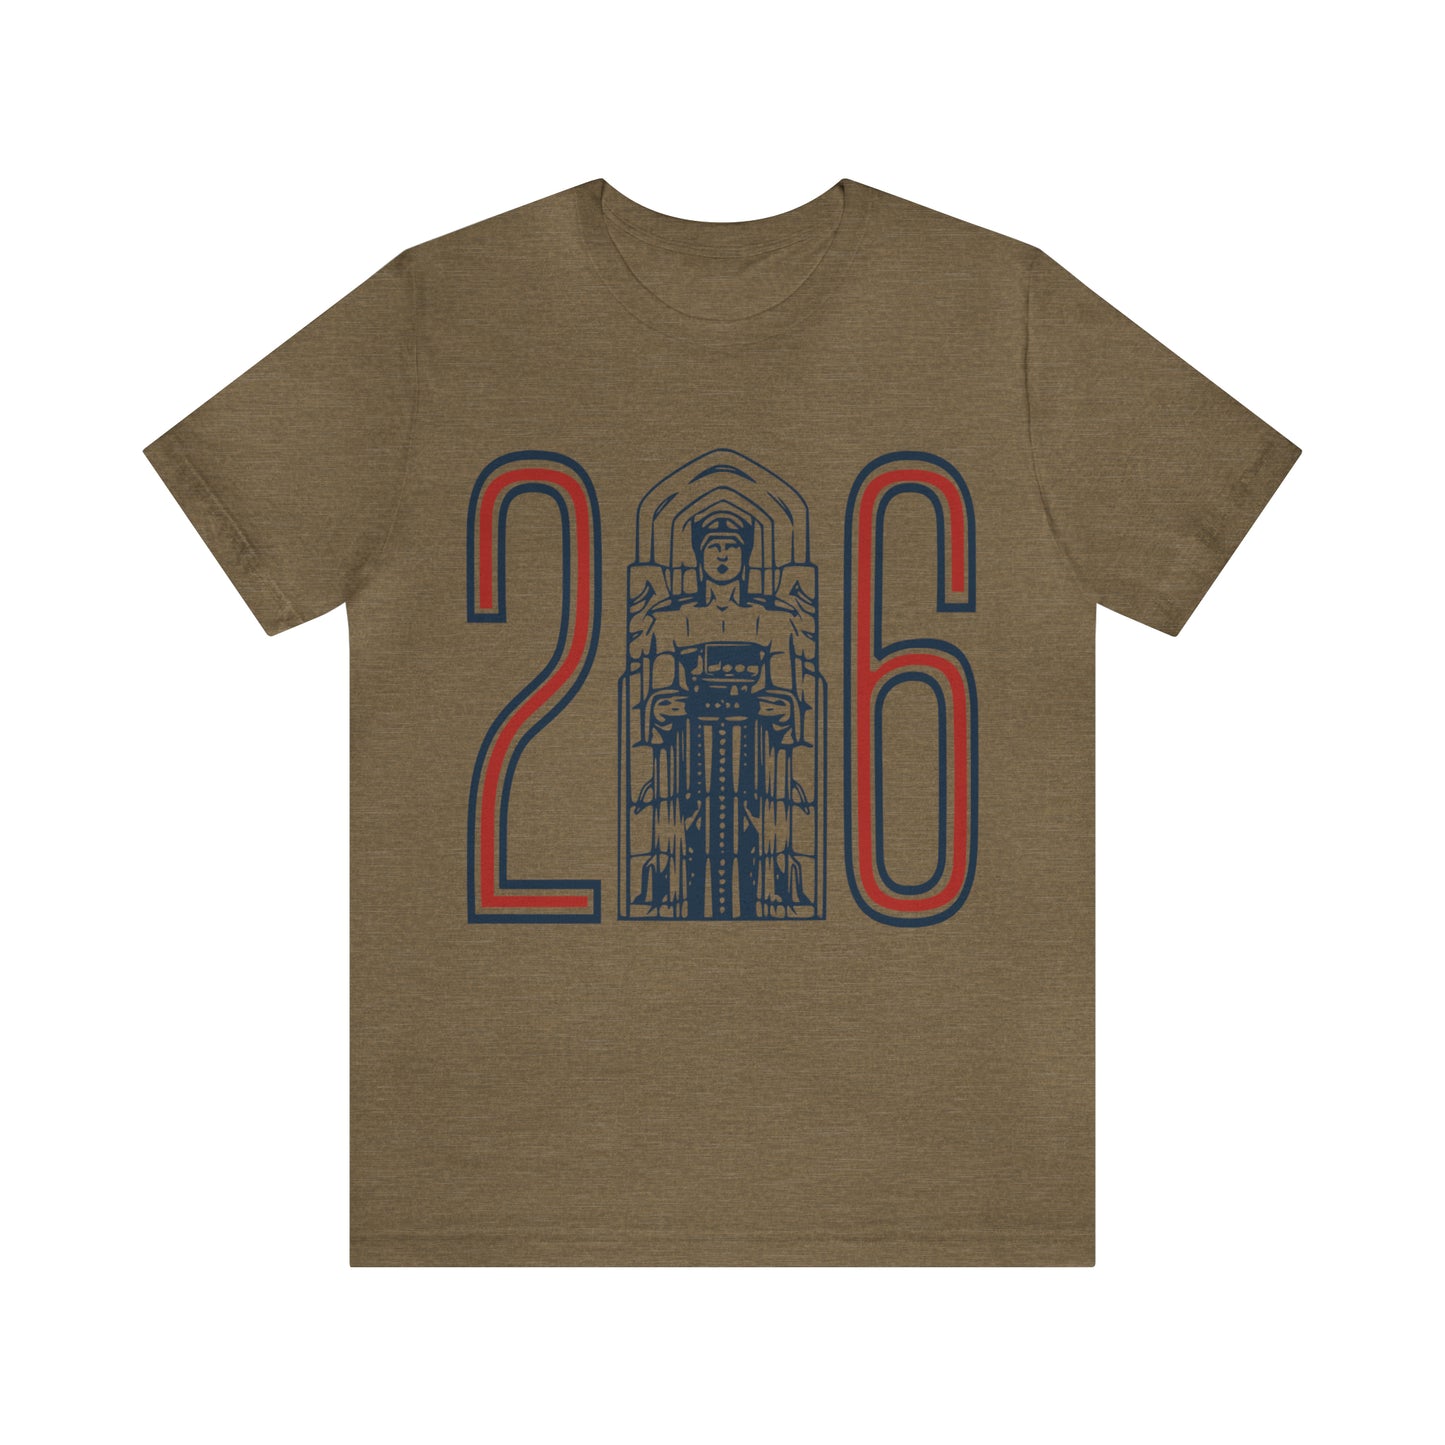 Retro Cleveland Baseball Tee -Vintage Unisex Short Sleeve T-Shirt